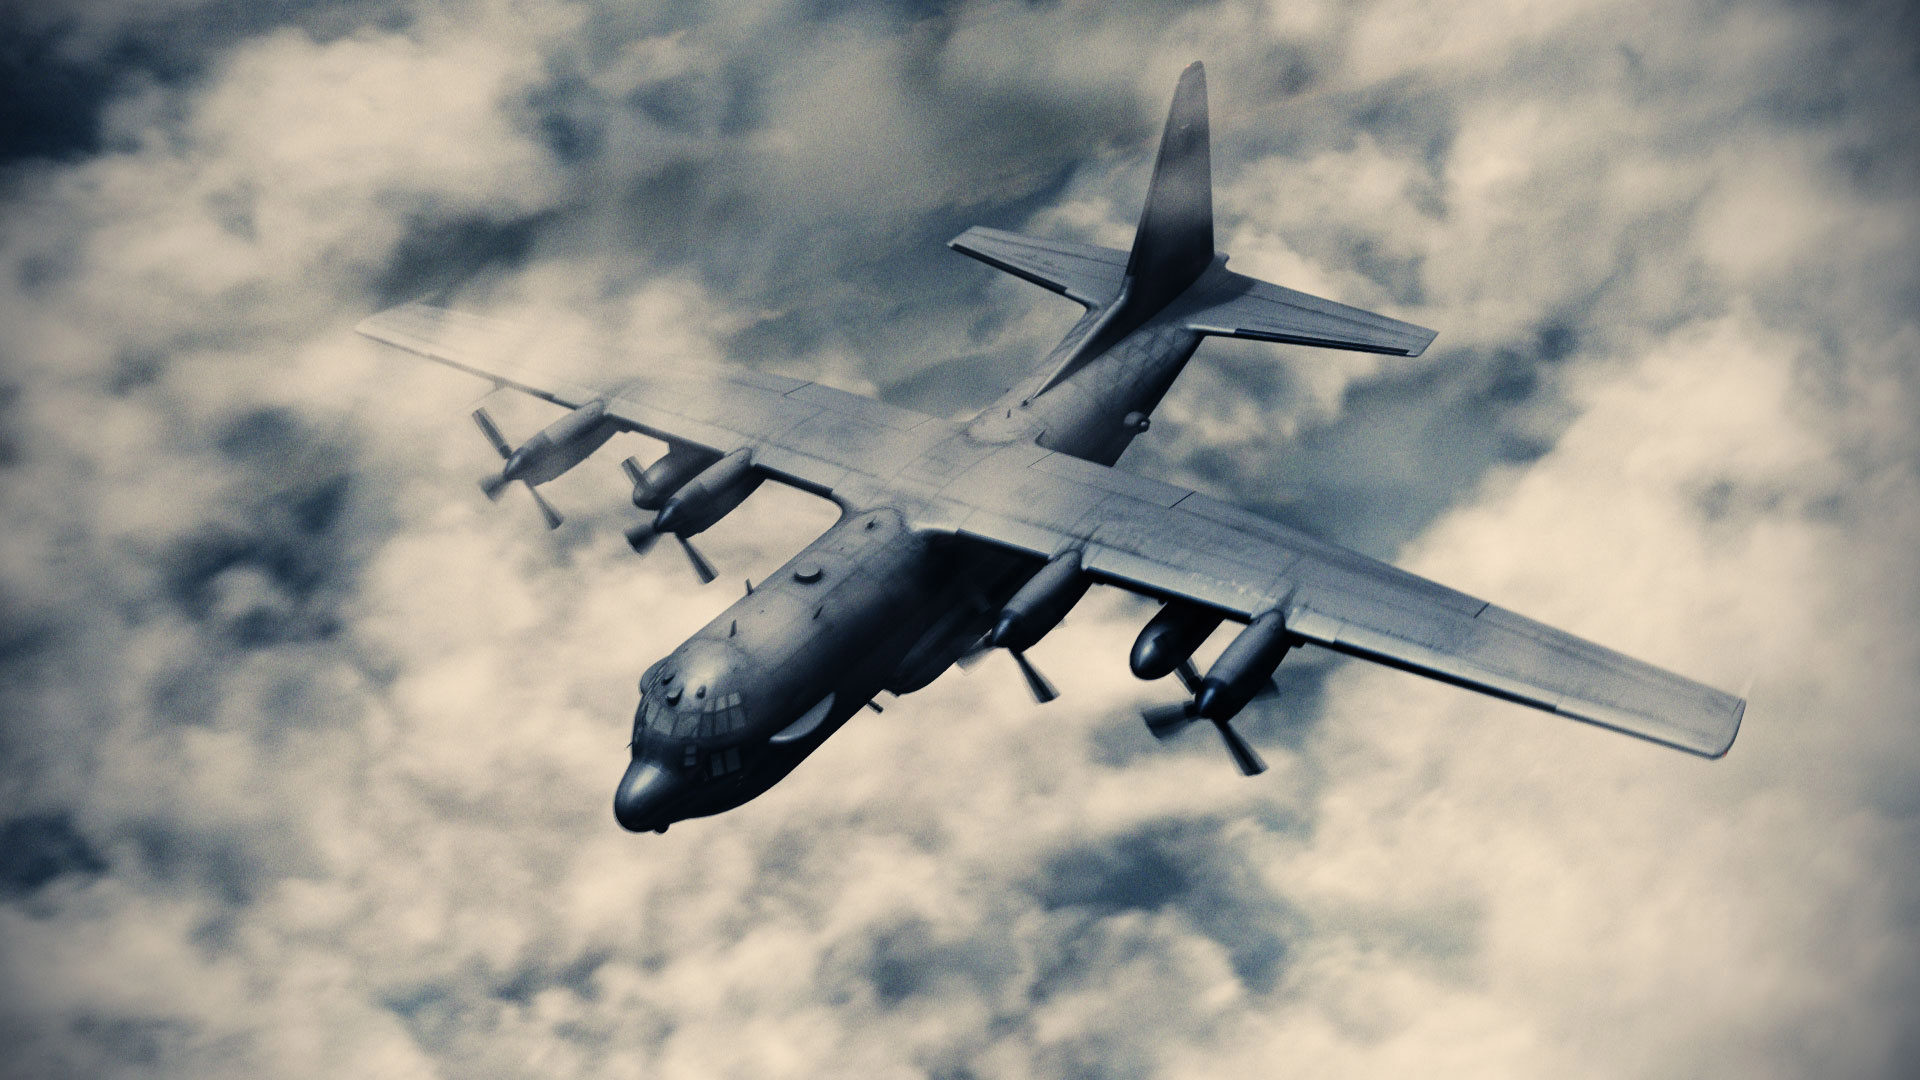 3D AC130 Bomber plane model VFX - HitFilm Update